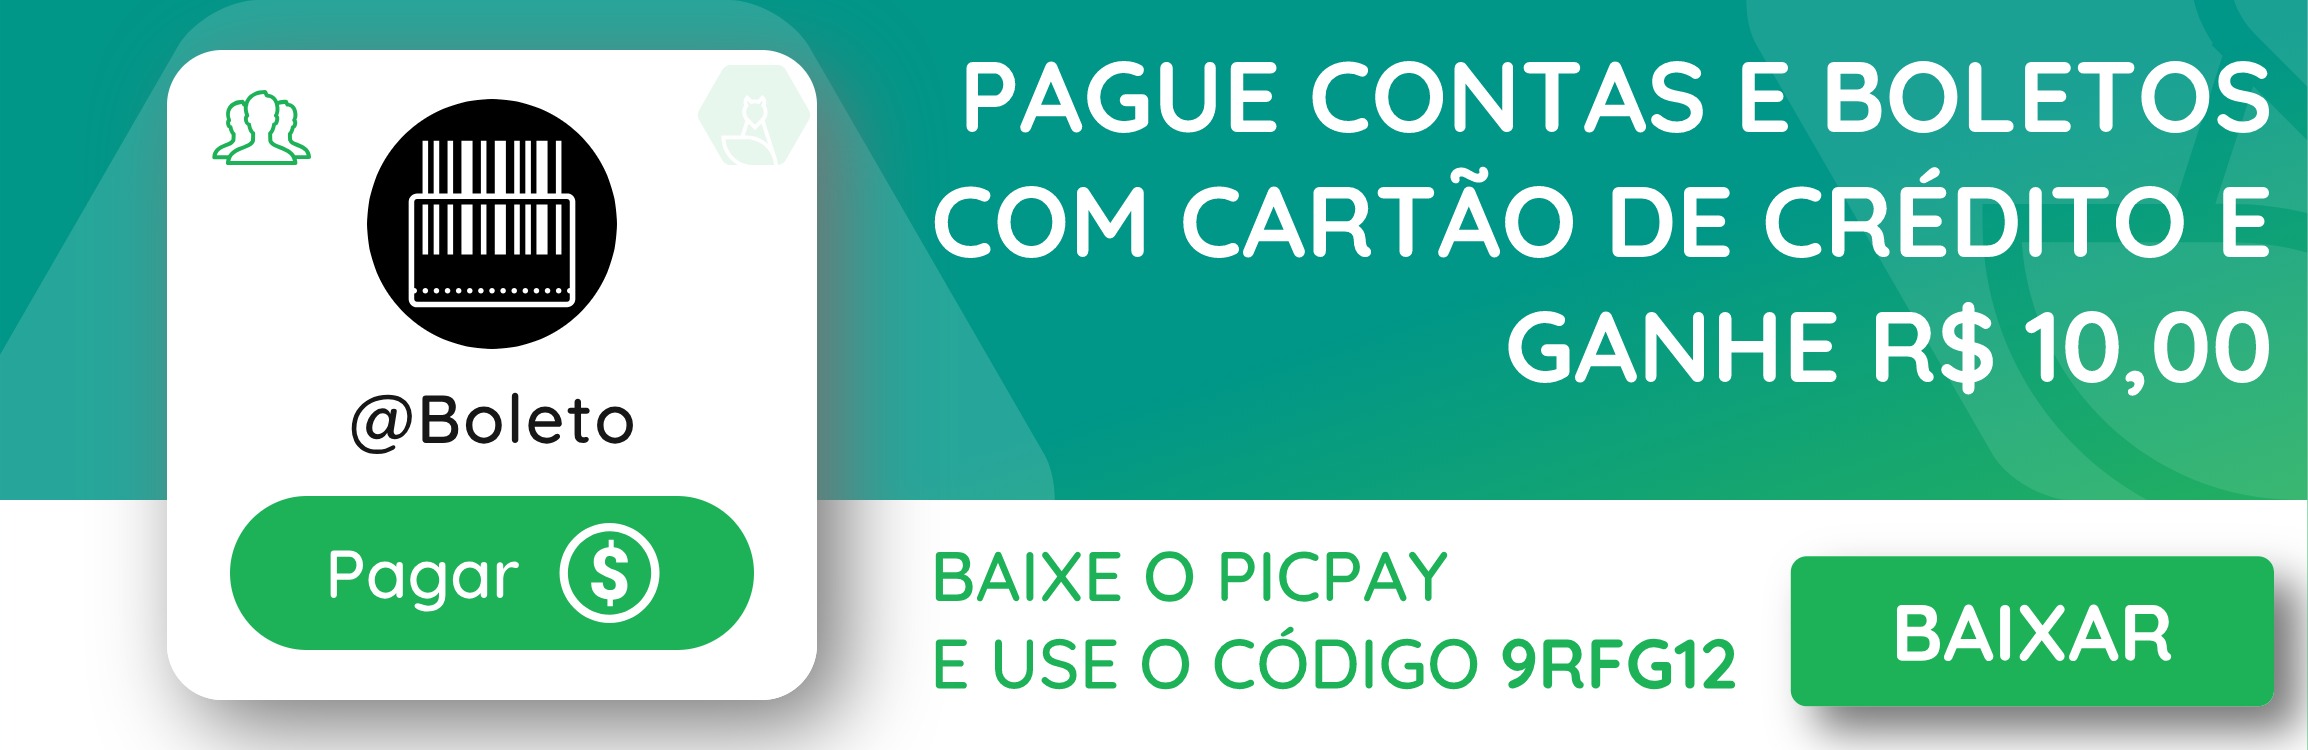 PicPay permite pagar Contas e Boletos com Cartão de crédito 1